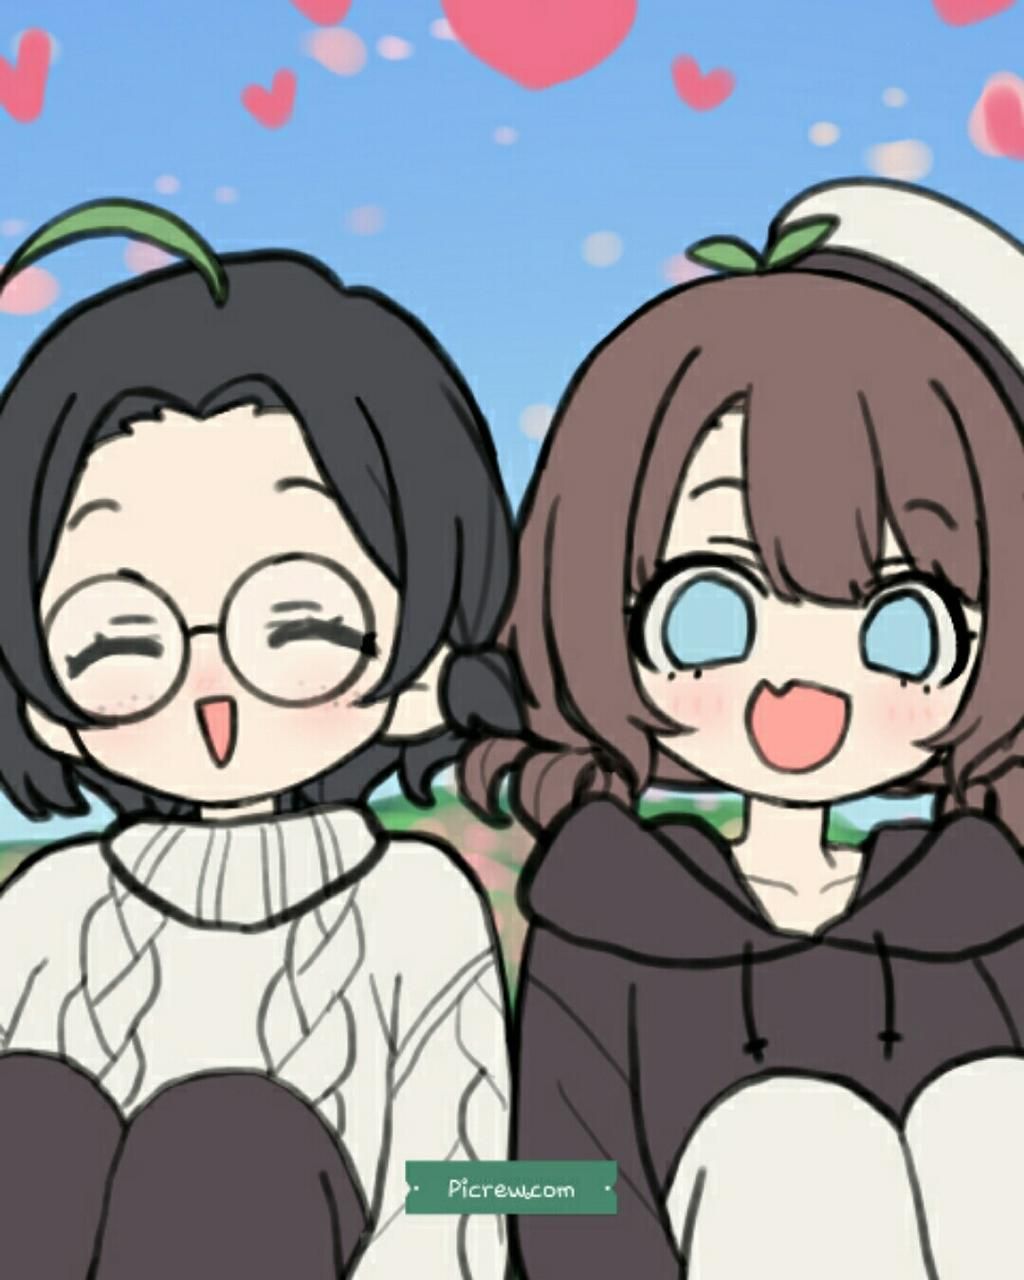 Đừng bỏ lỡ những bức ảnh anime hai chị em dễ thương và hiếu động này. Đây sẽ là những khoảnh khắc đáng yêu của hai nhân vật cùng nhau trải qua những chuyện đời thường những vẫn đầy sự khác biệt.